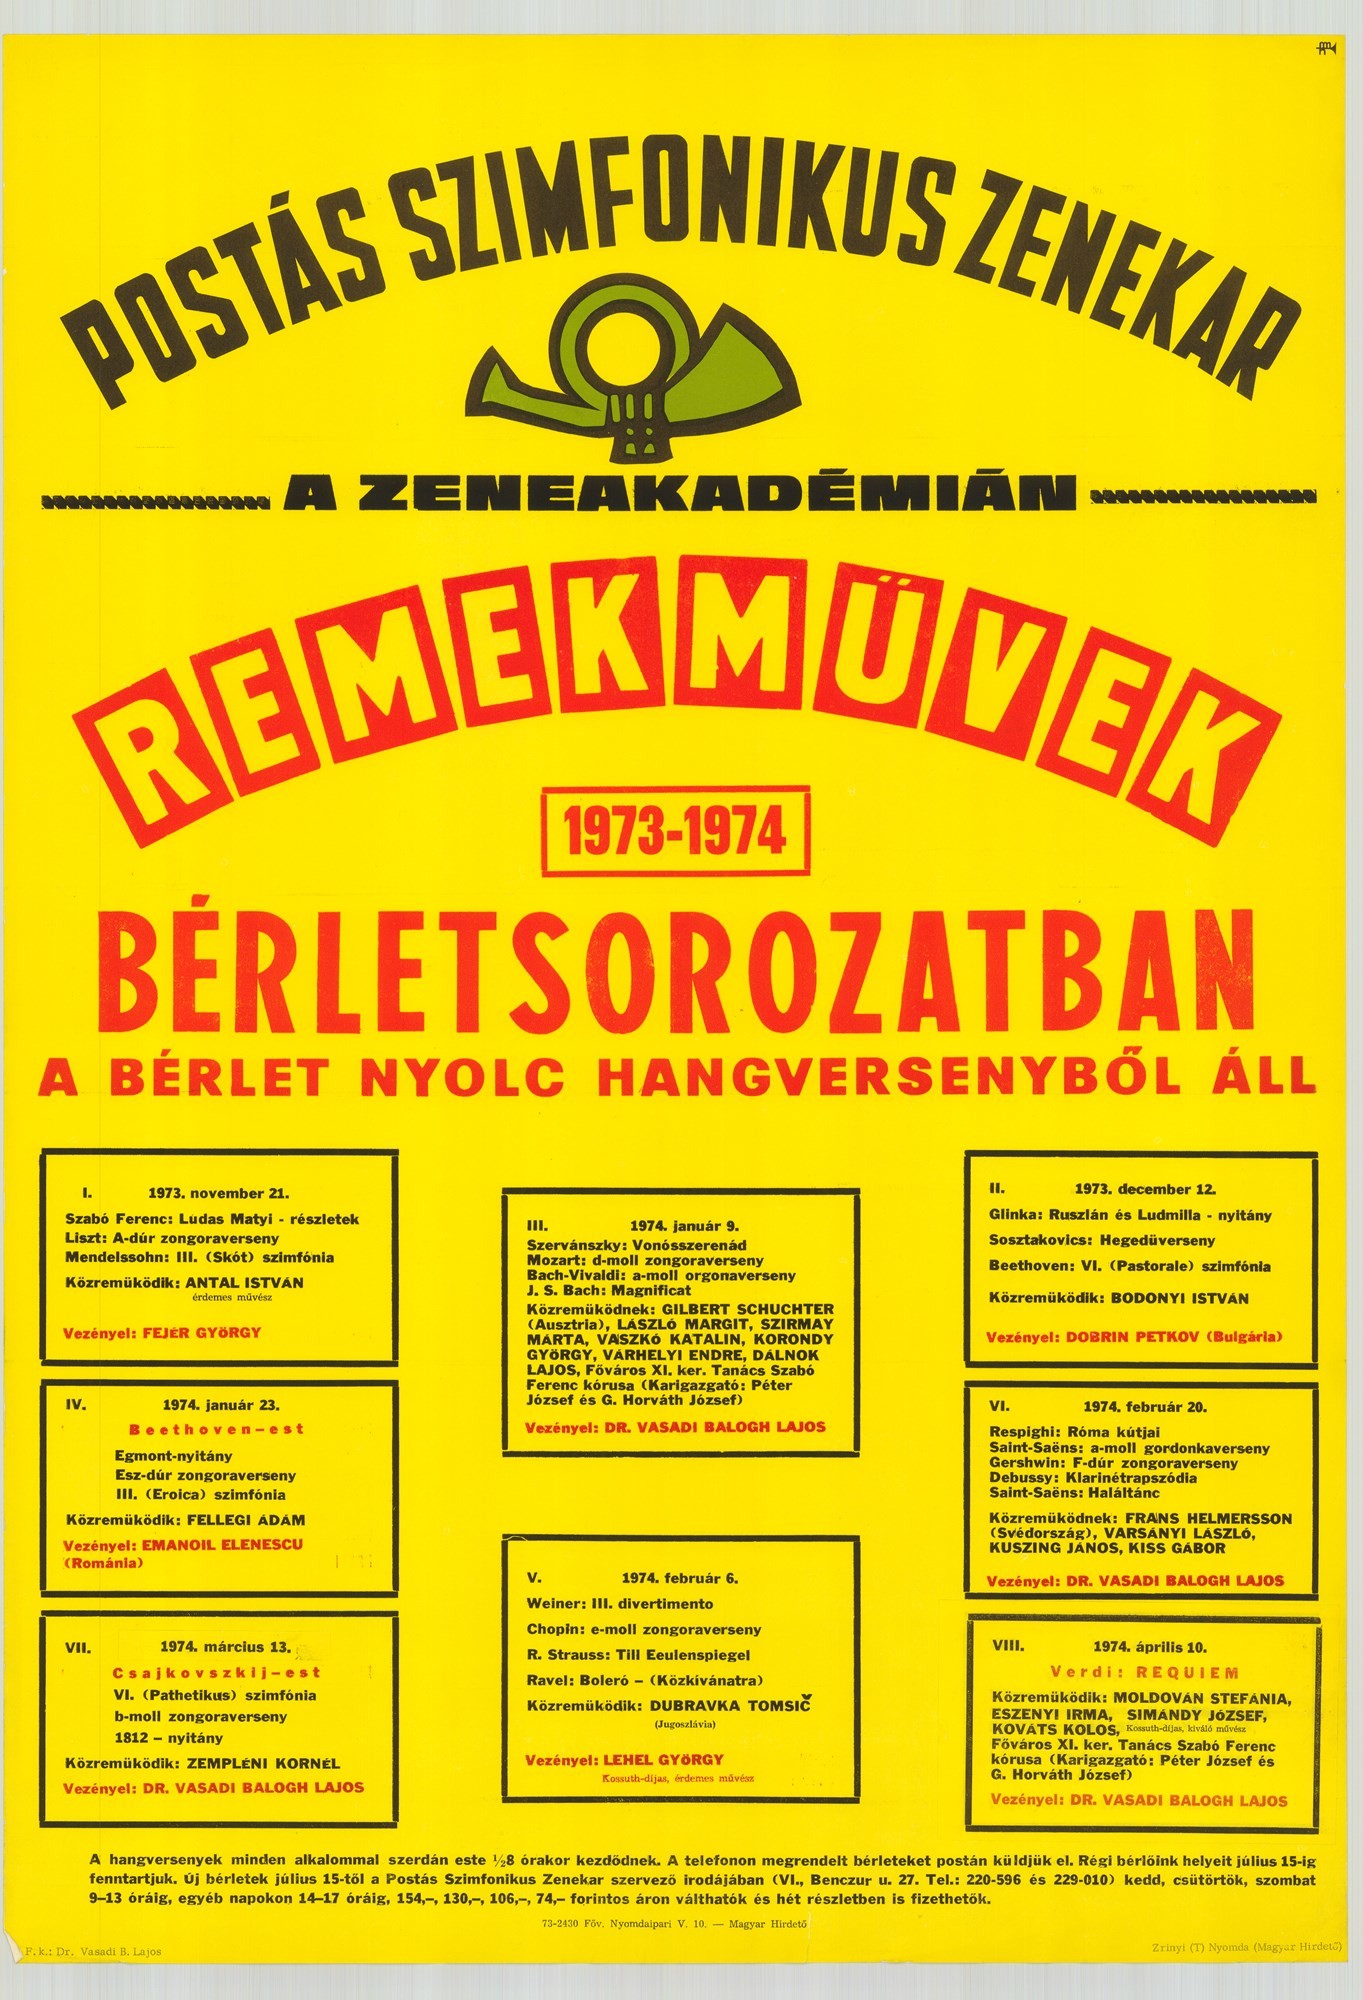 Plakát - Postás Szimfonikus Zenekar a Zeneakadémián, Remekművek, 1973-1974 (Postamúzeum CC BY-NC-SA)